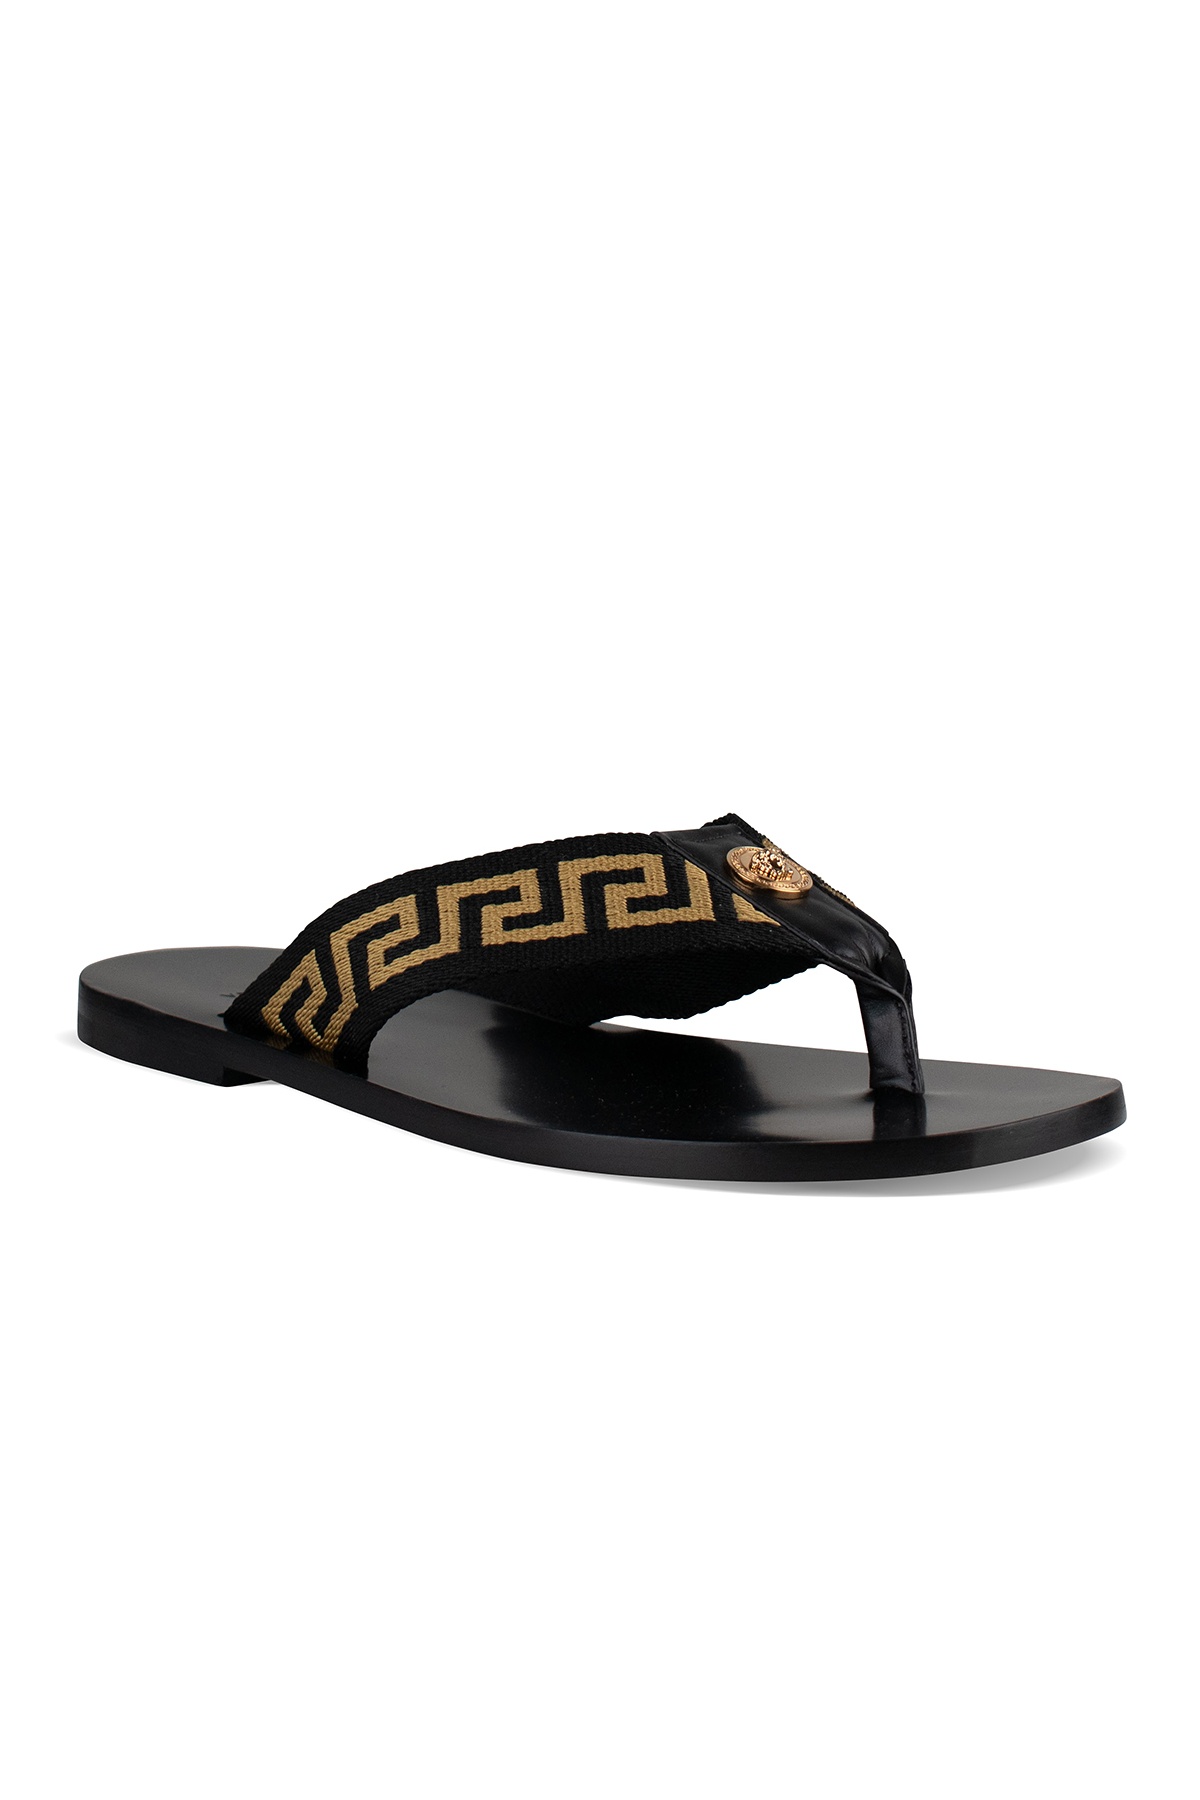 Greca Sandals - 2